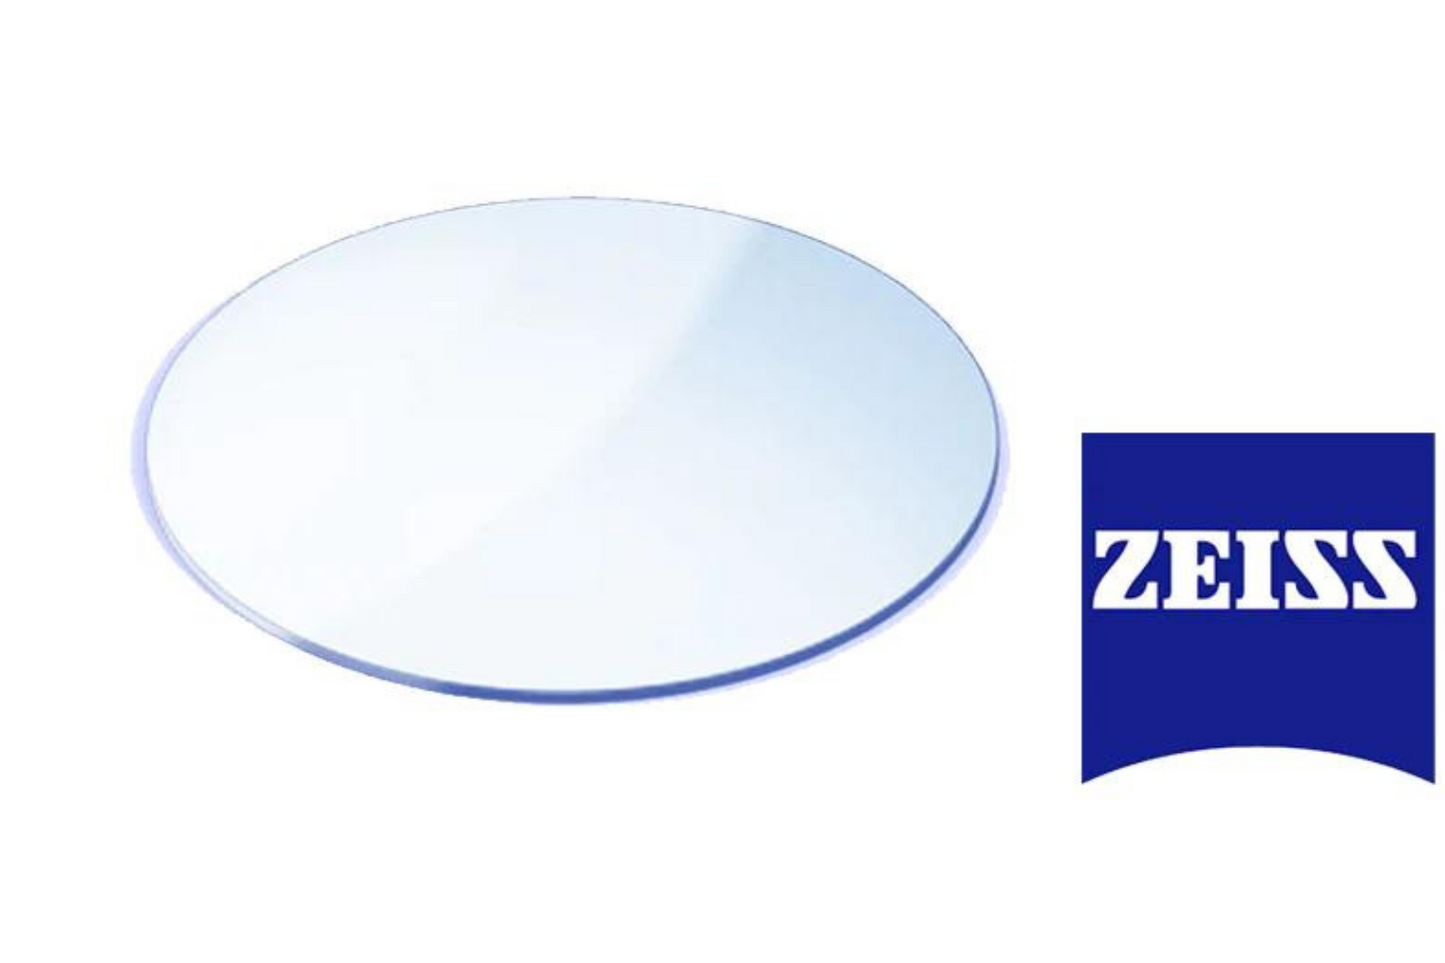 ZEISS Single Vision lenses